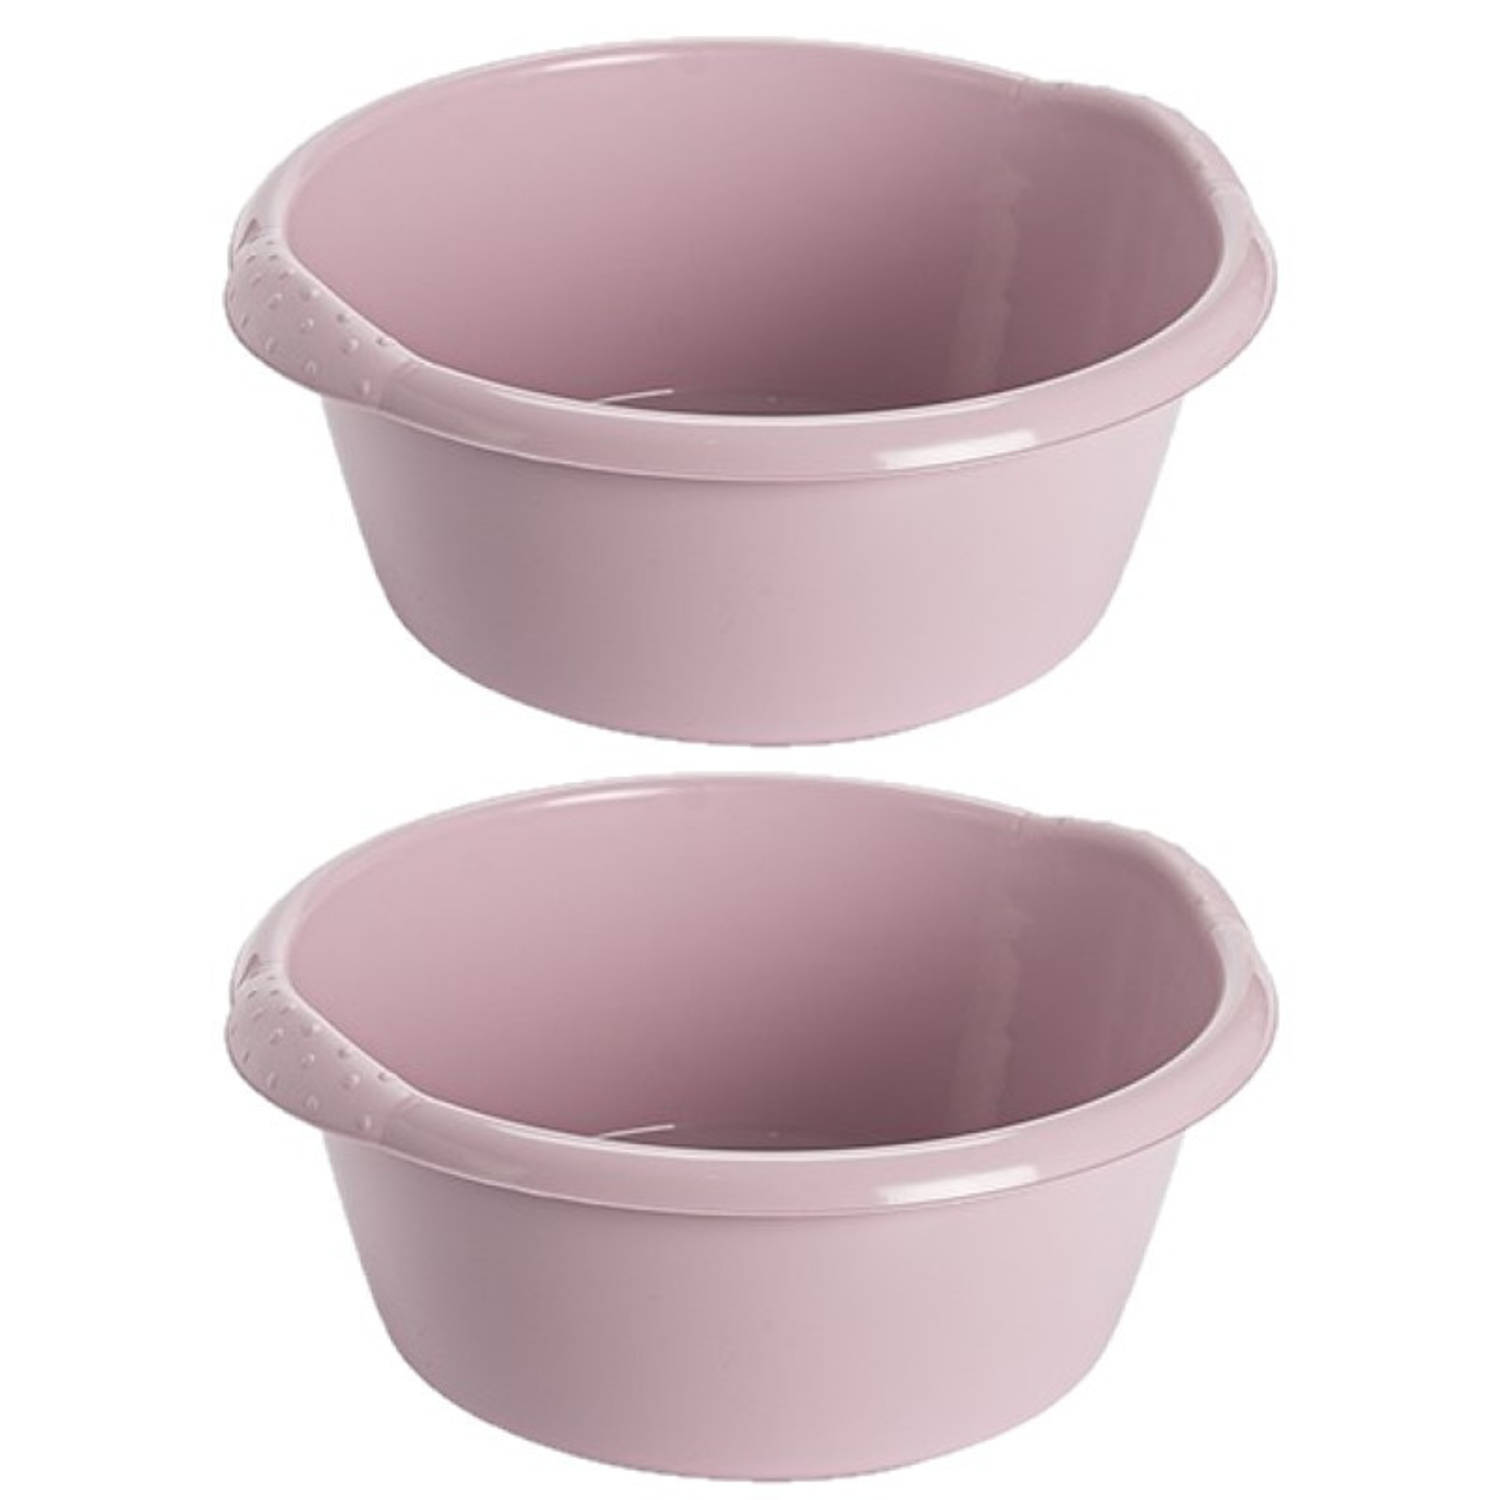 Hega hogar 2x stuks kunststof plastic afwas teiltje/afwasbak rond 20 liter zacht roze - Diameter 47 cm x Hoogte 19 cm - Schoonmaak/huishouden